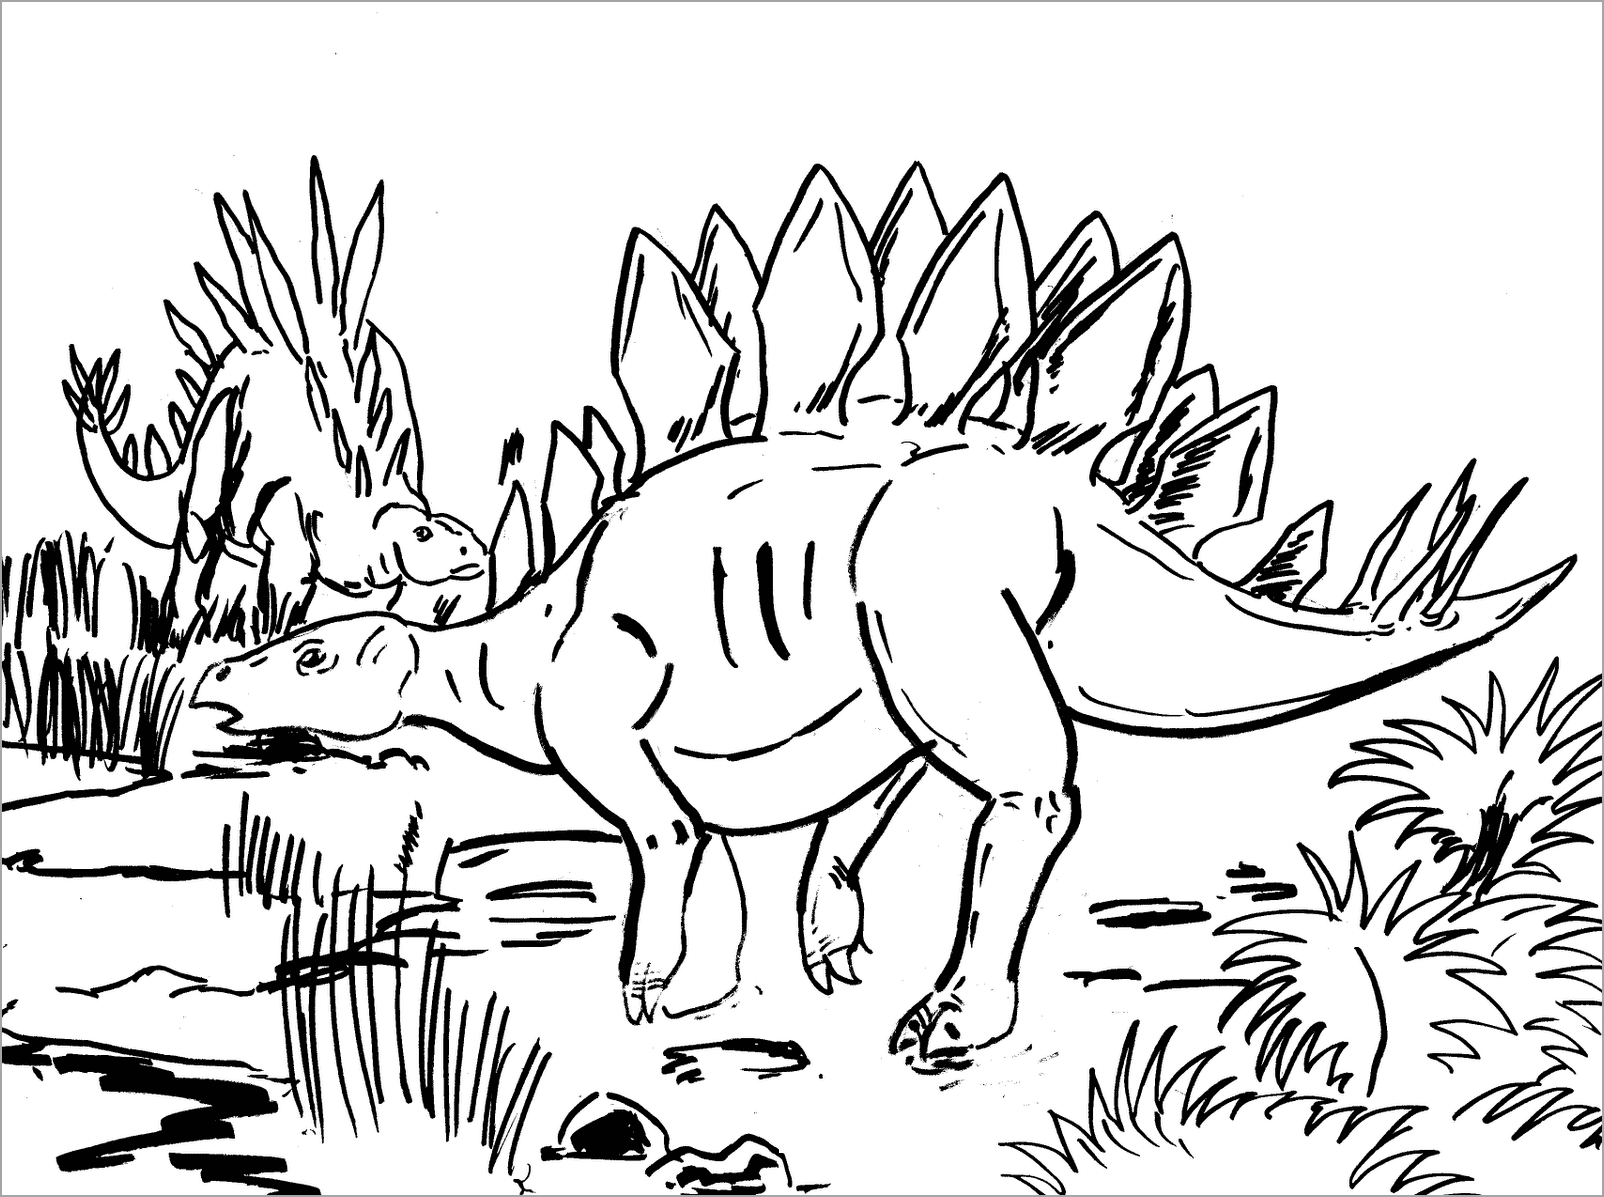 Tranh tô màu khủng long cho bé 5 tuổi